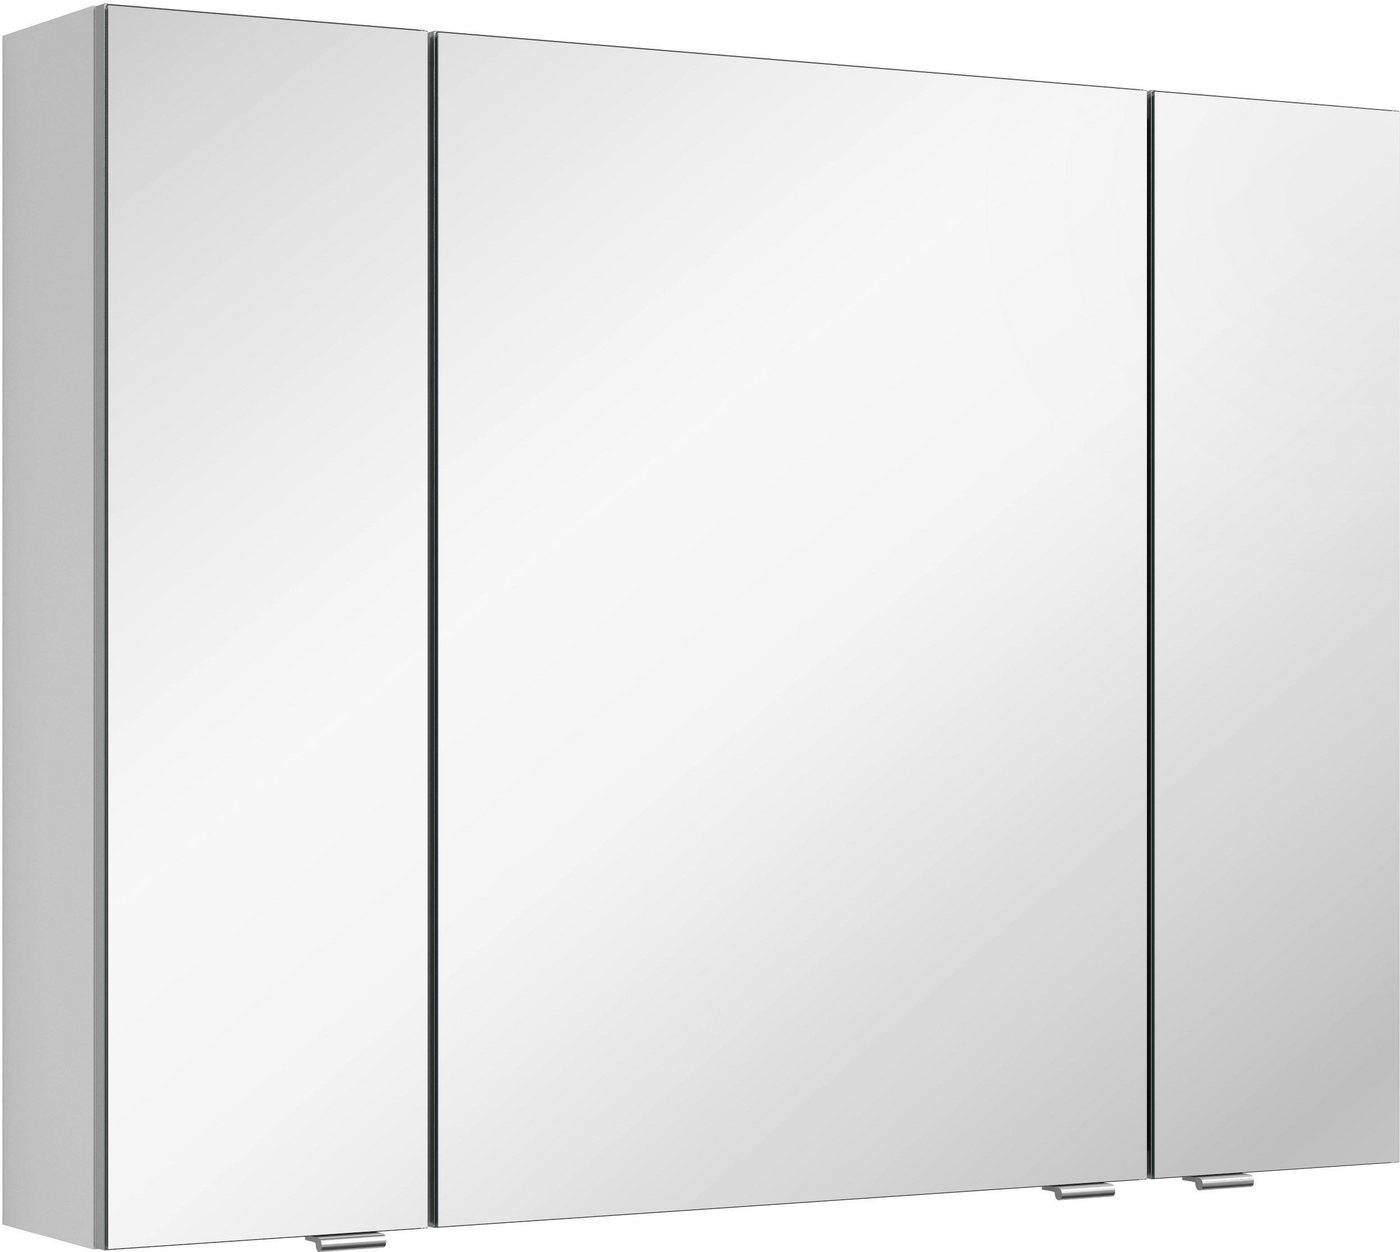 MARLIN Spiegelschrank 3980 mit doppelseitig verspiegelten Türen, vormontiert von MARLIN